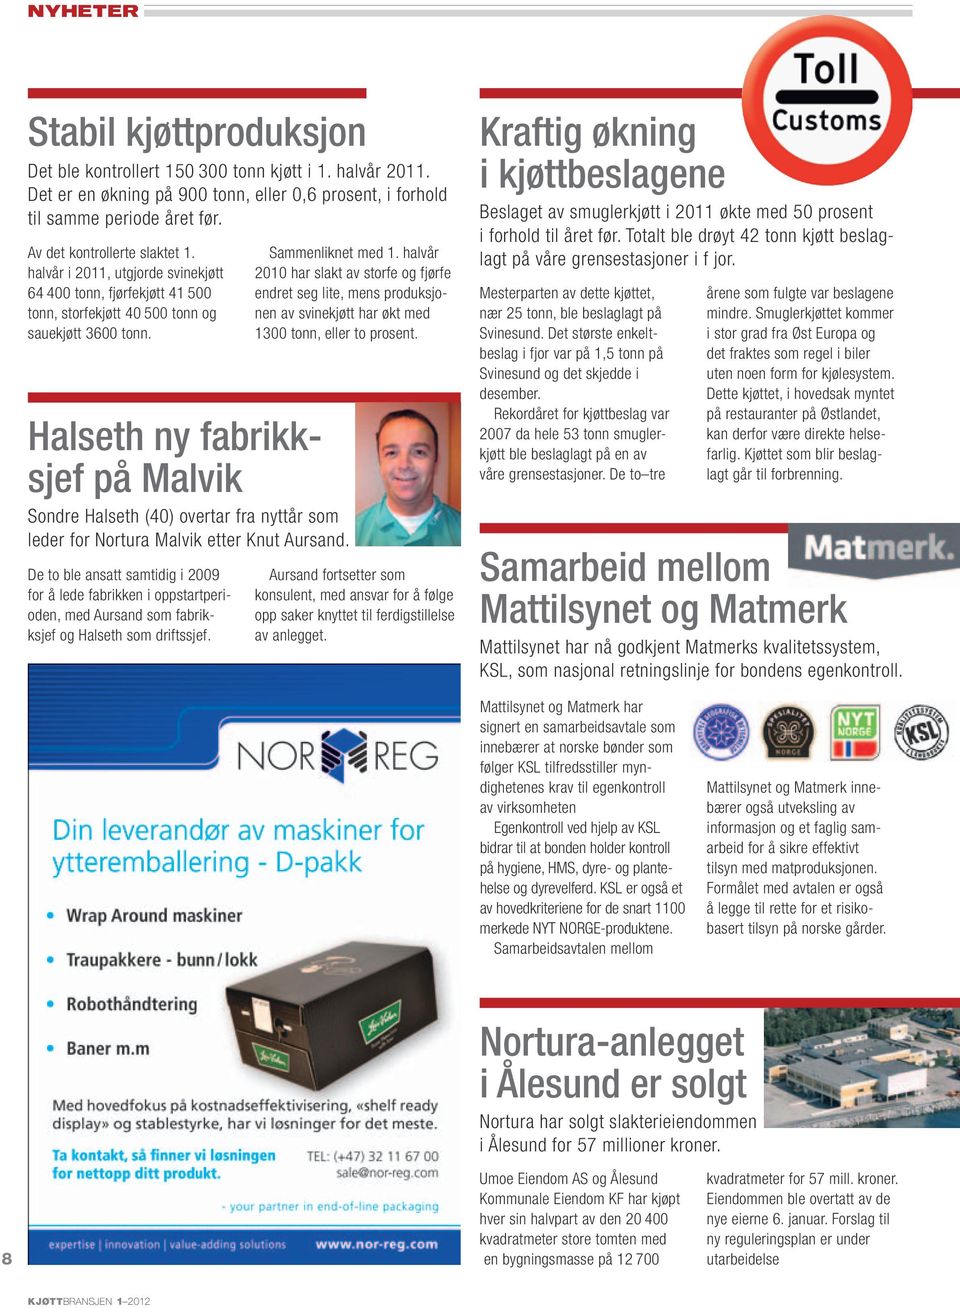 Halseth ny fabrikksjef på Malvik Sondre Halseth (40) overtar fra nyttår som leder for Nortura Malvik etter Knut Aursand.